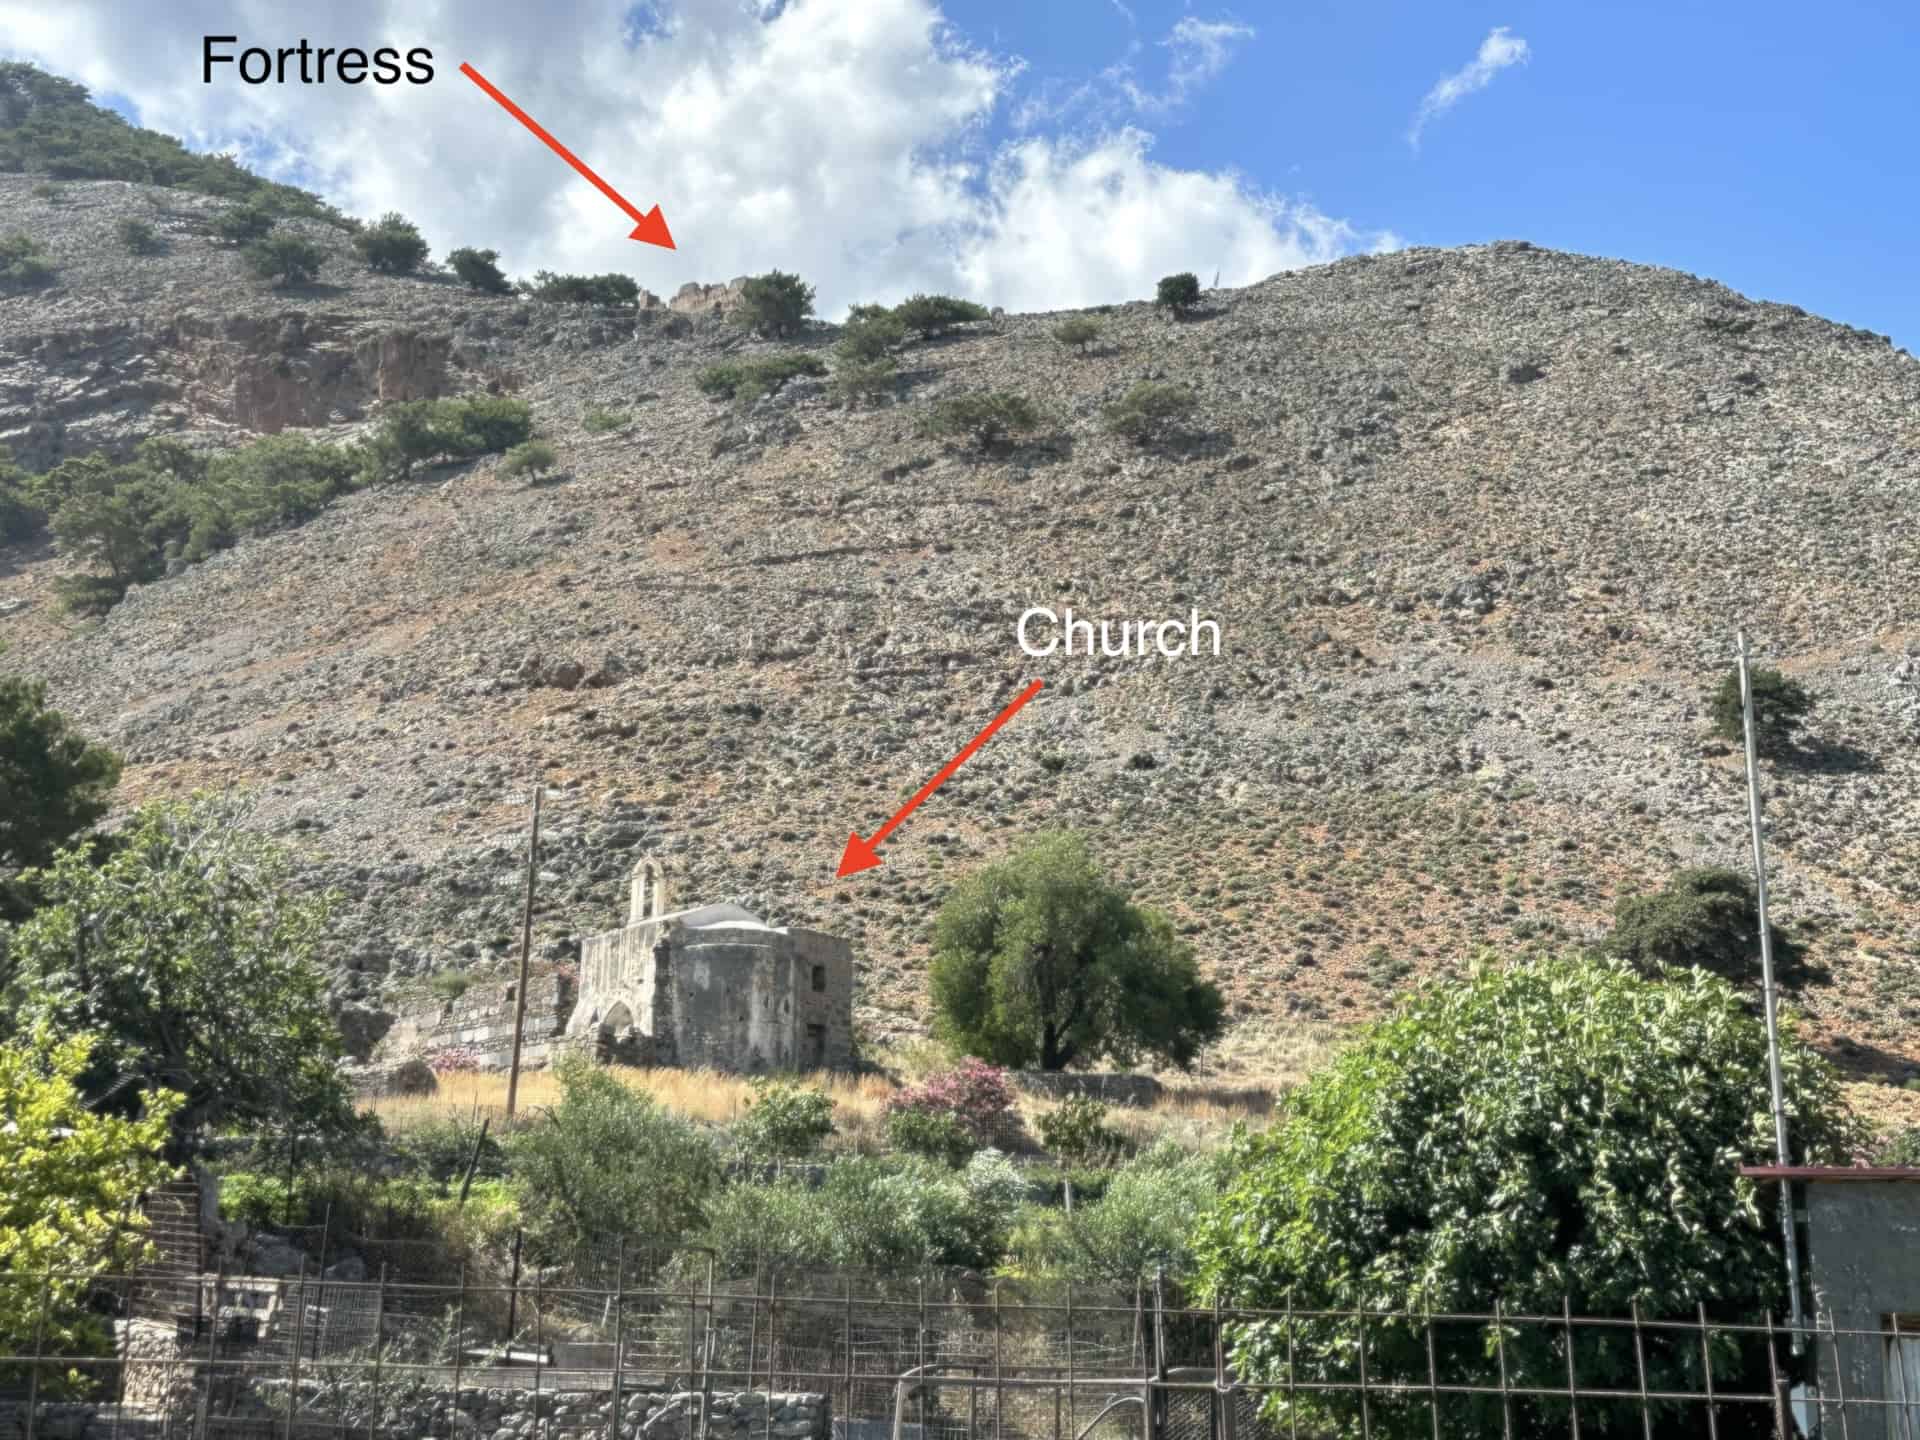 Church and fortress at Agia Roumeli, Crete, Greece